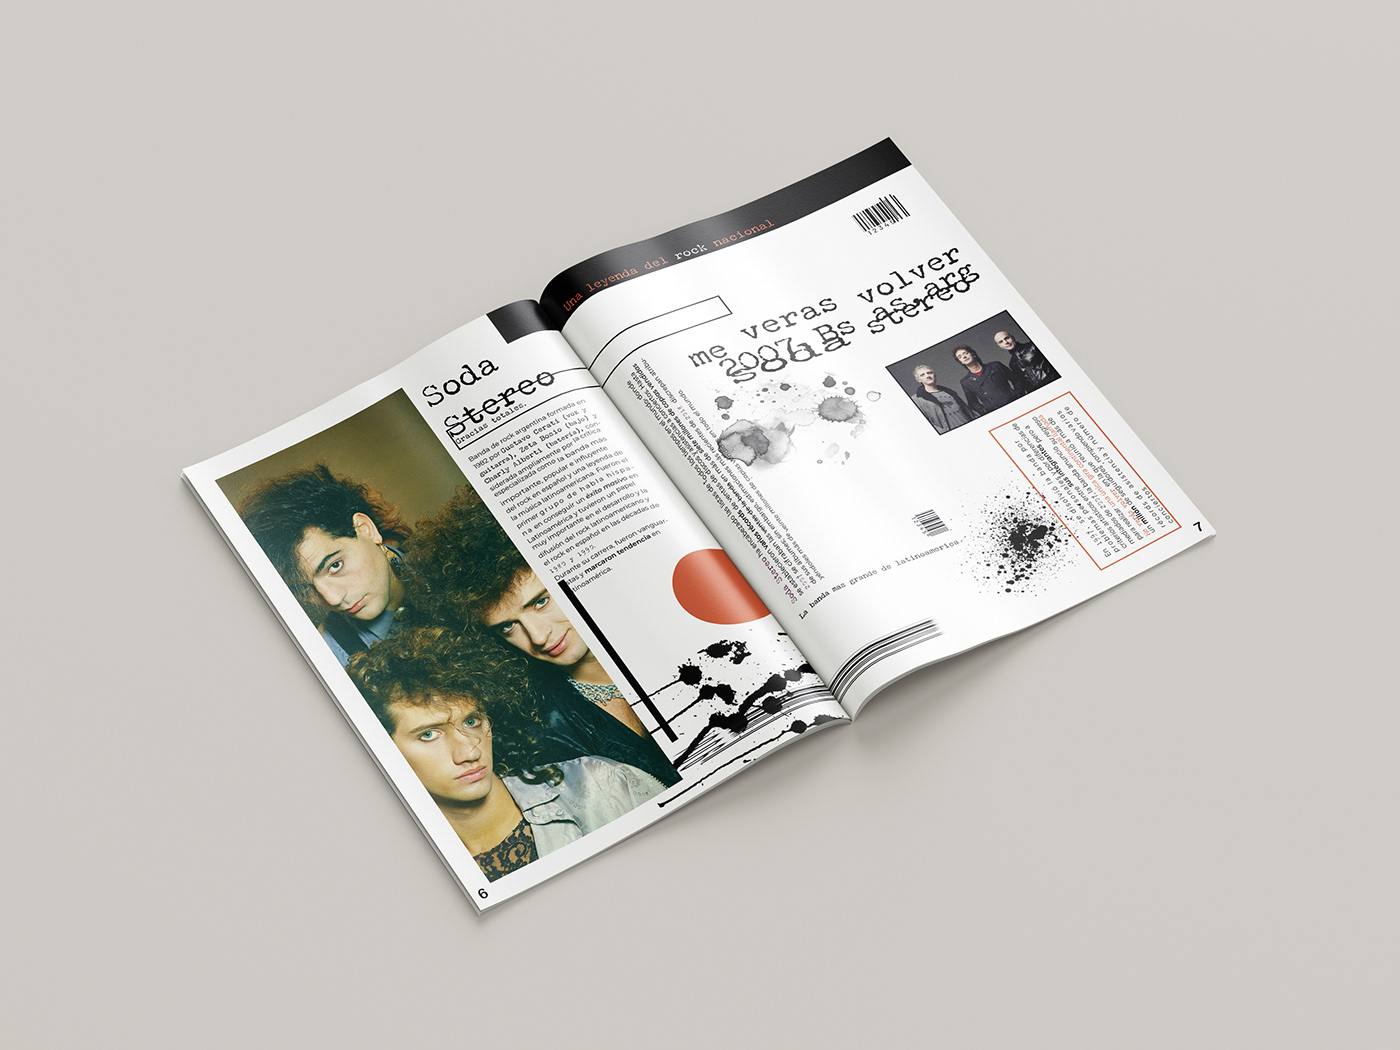 magazine Project in design editorial ray gun